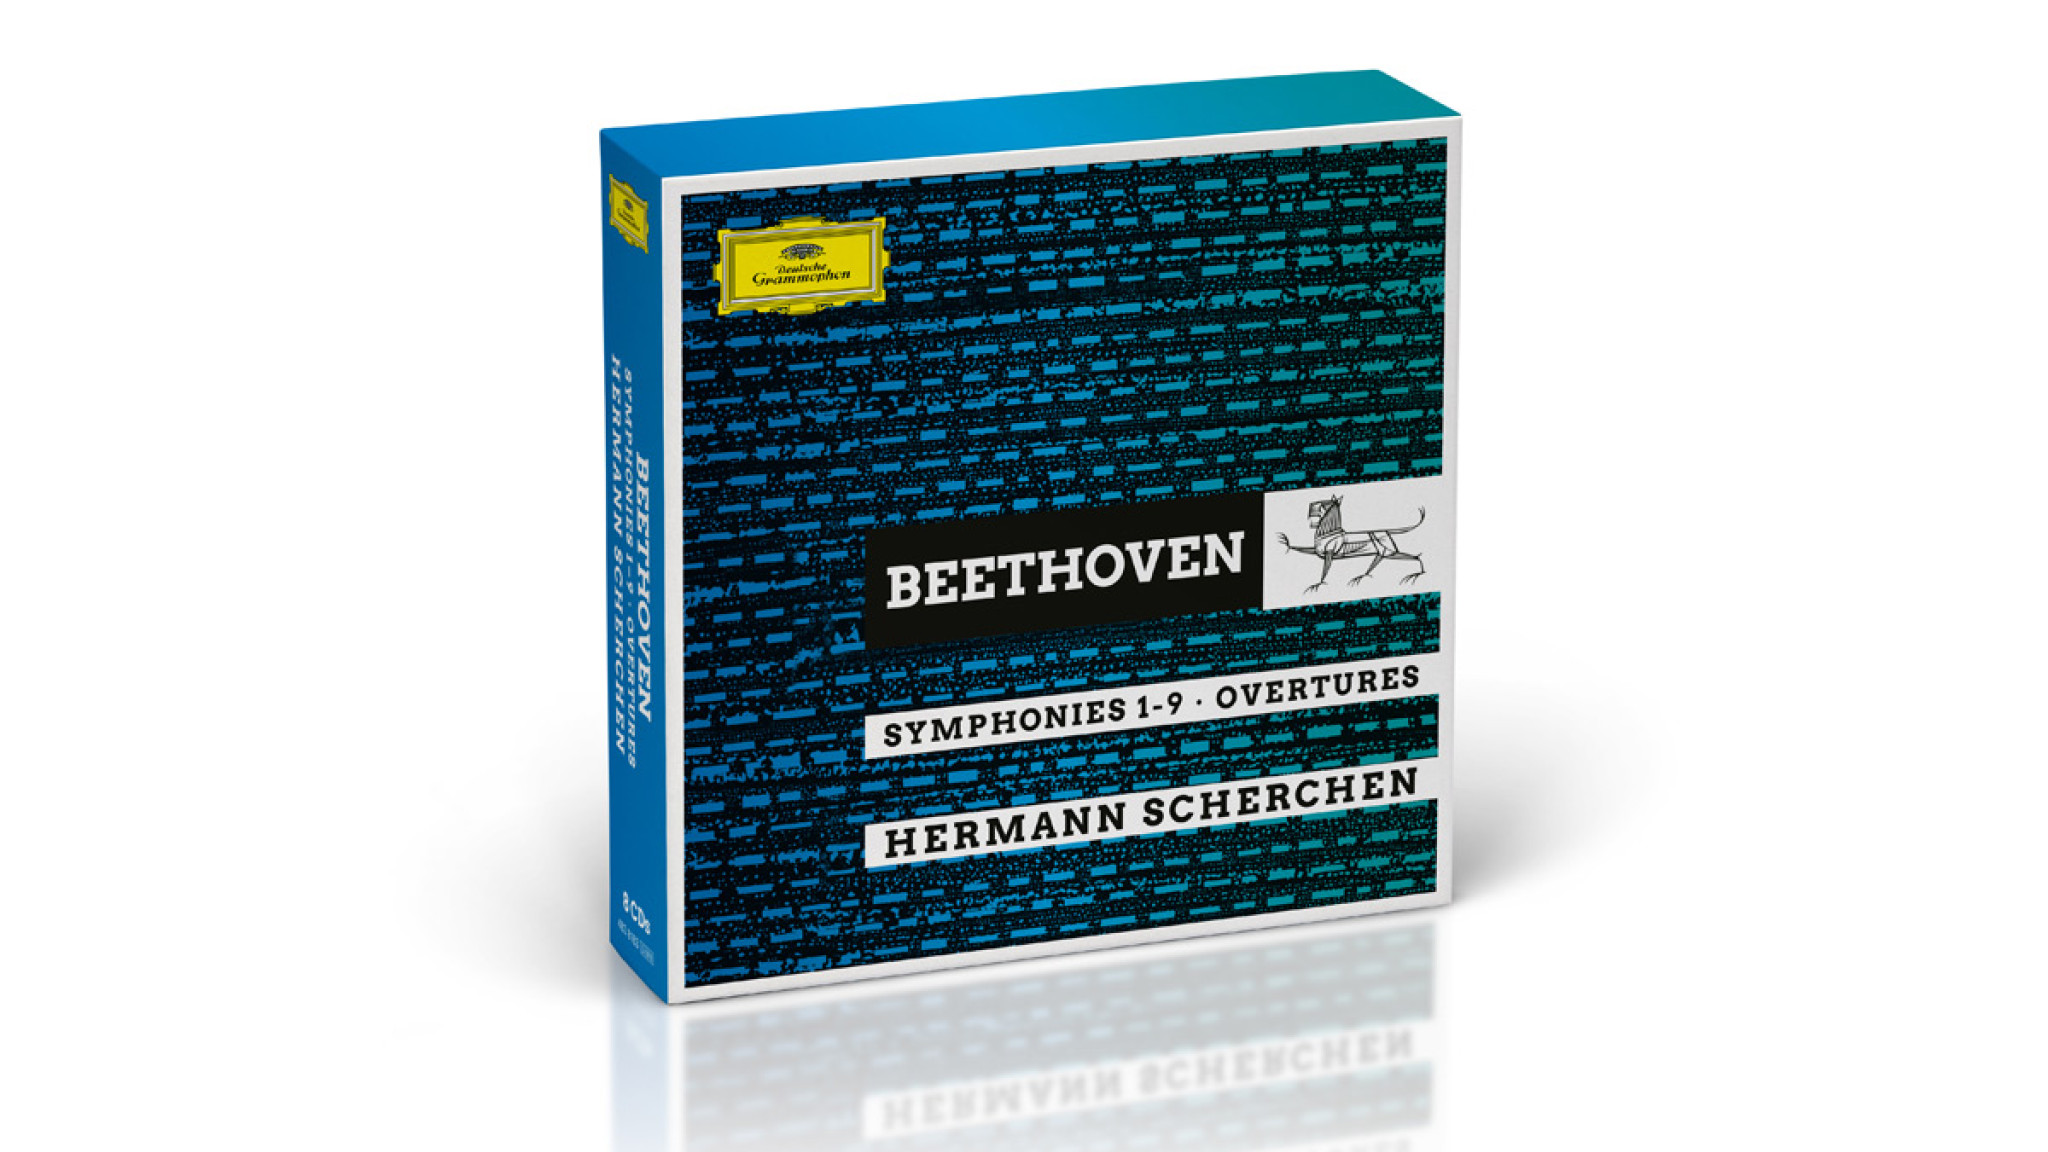 Der Beethovenzyklus von Hermann Scherchen